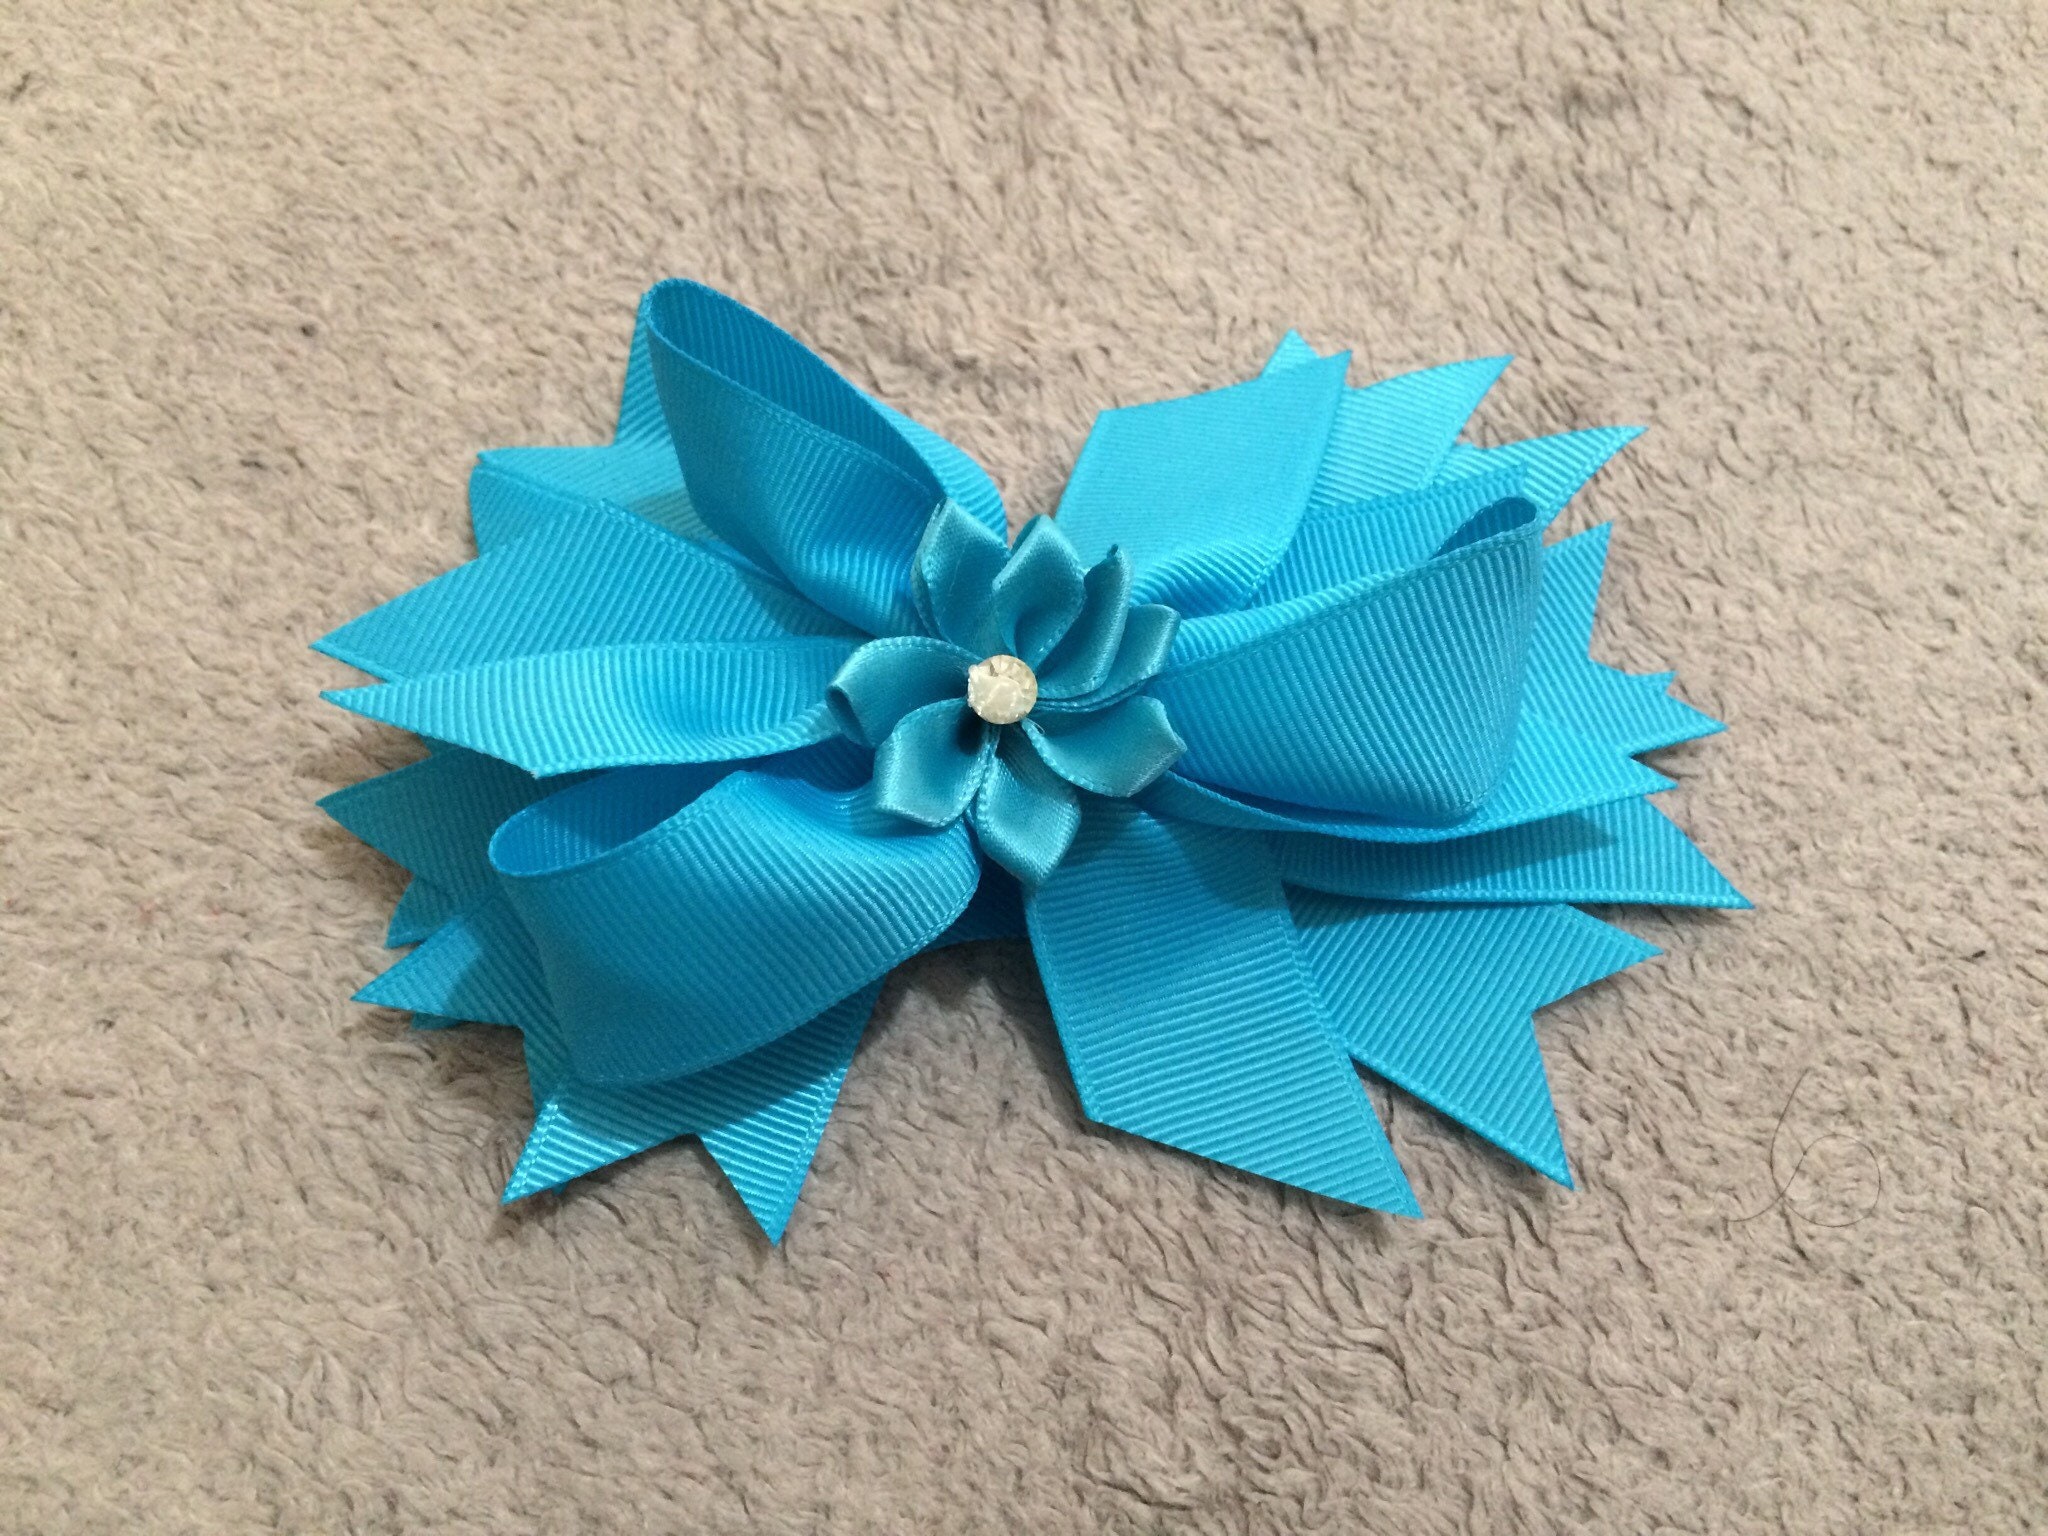 Handmade hair clip flower hair clip girls birthday gift | Etsy